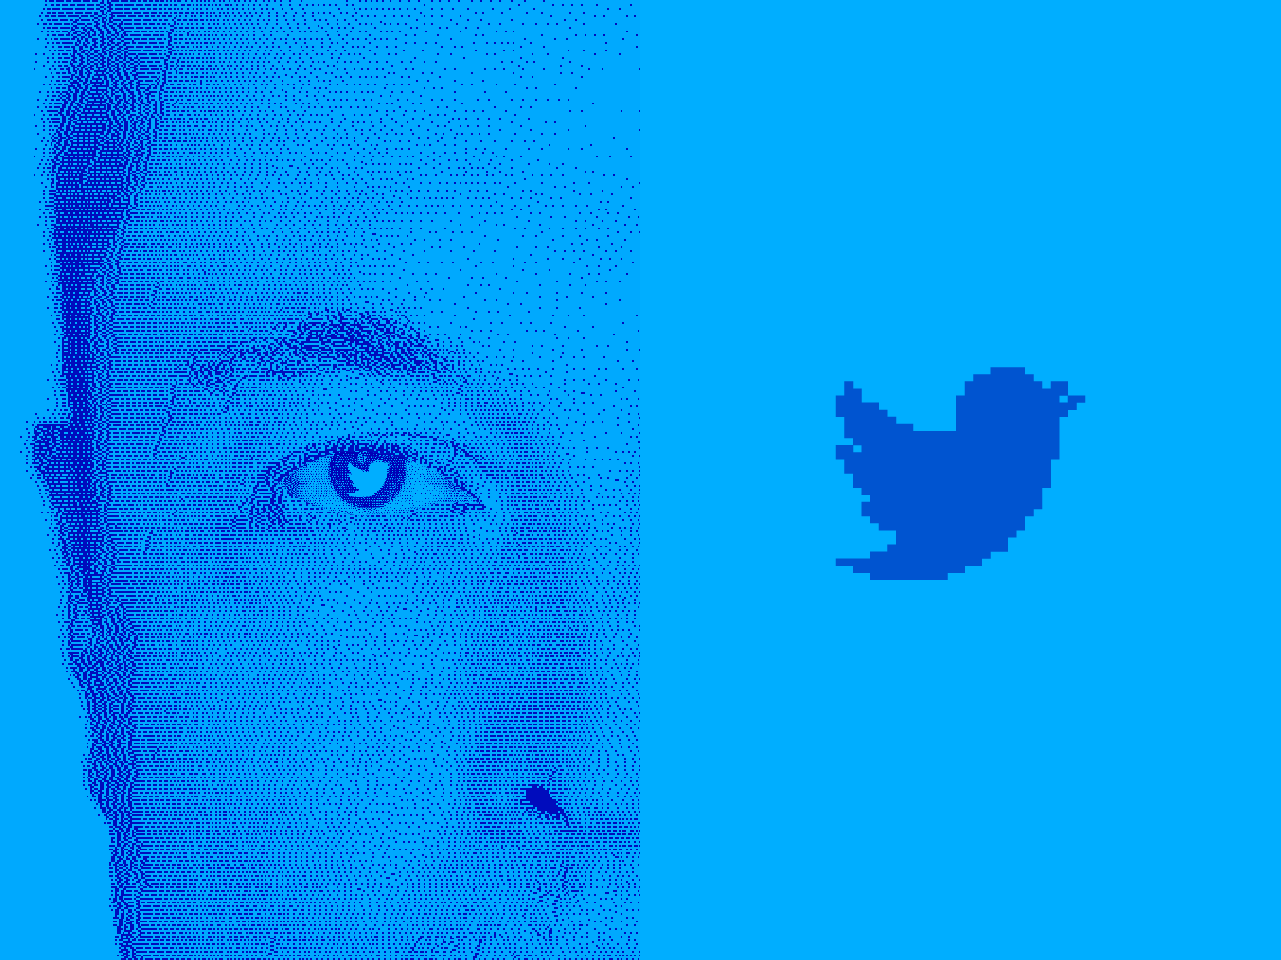 Dois zé-ruelas fingiram ser funcionários demitidos do Twitter